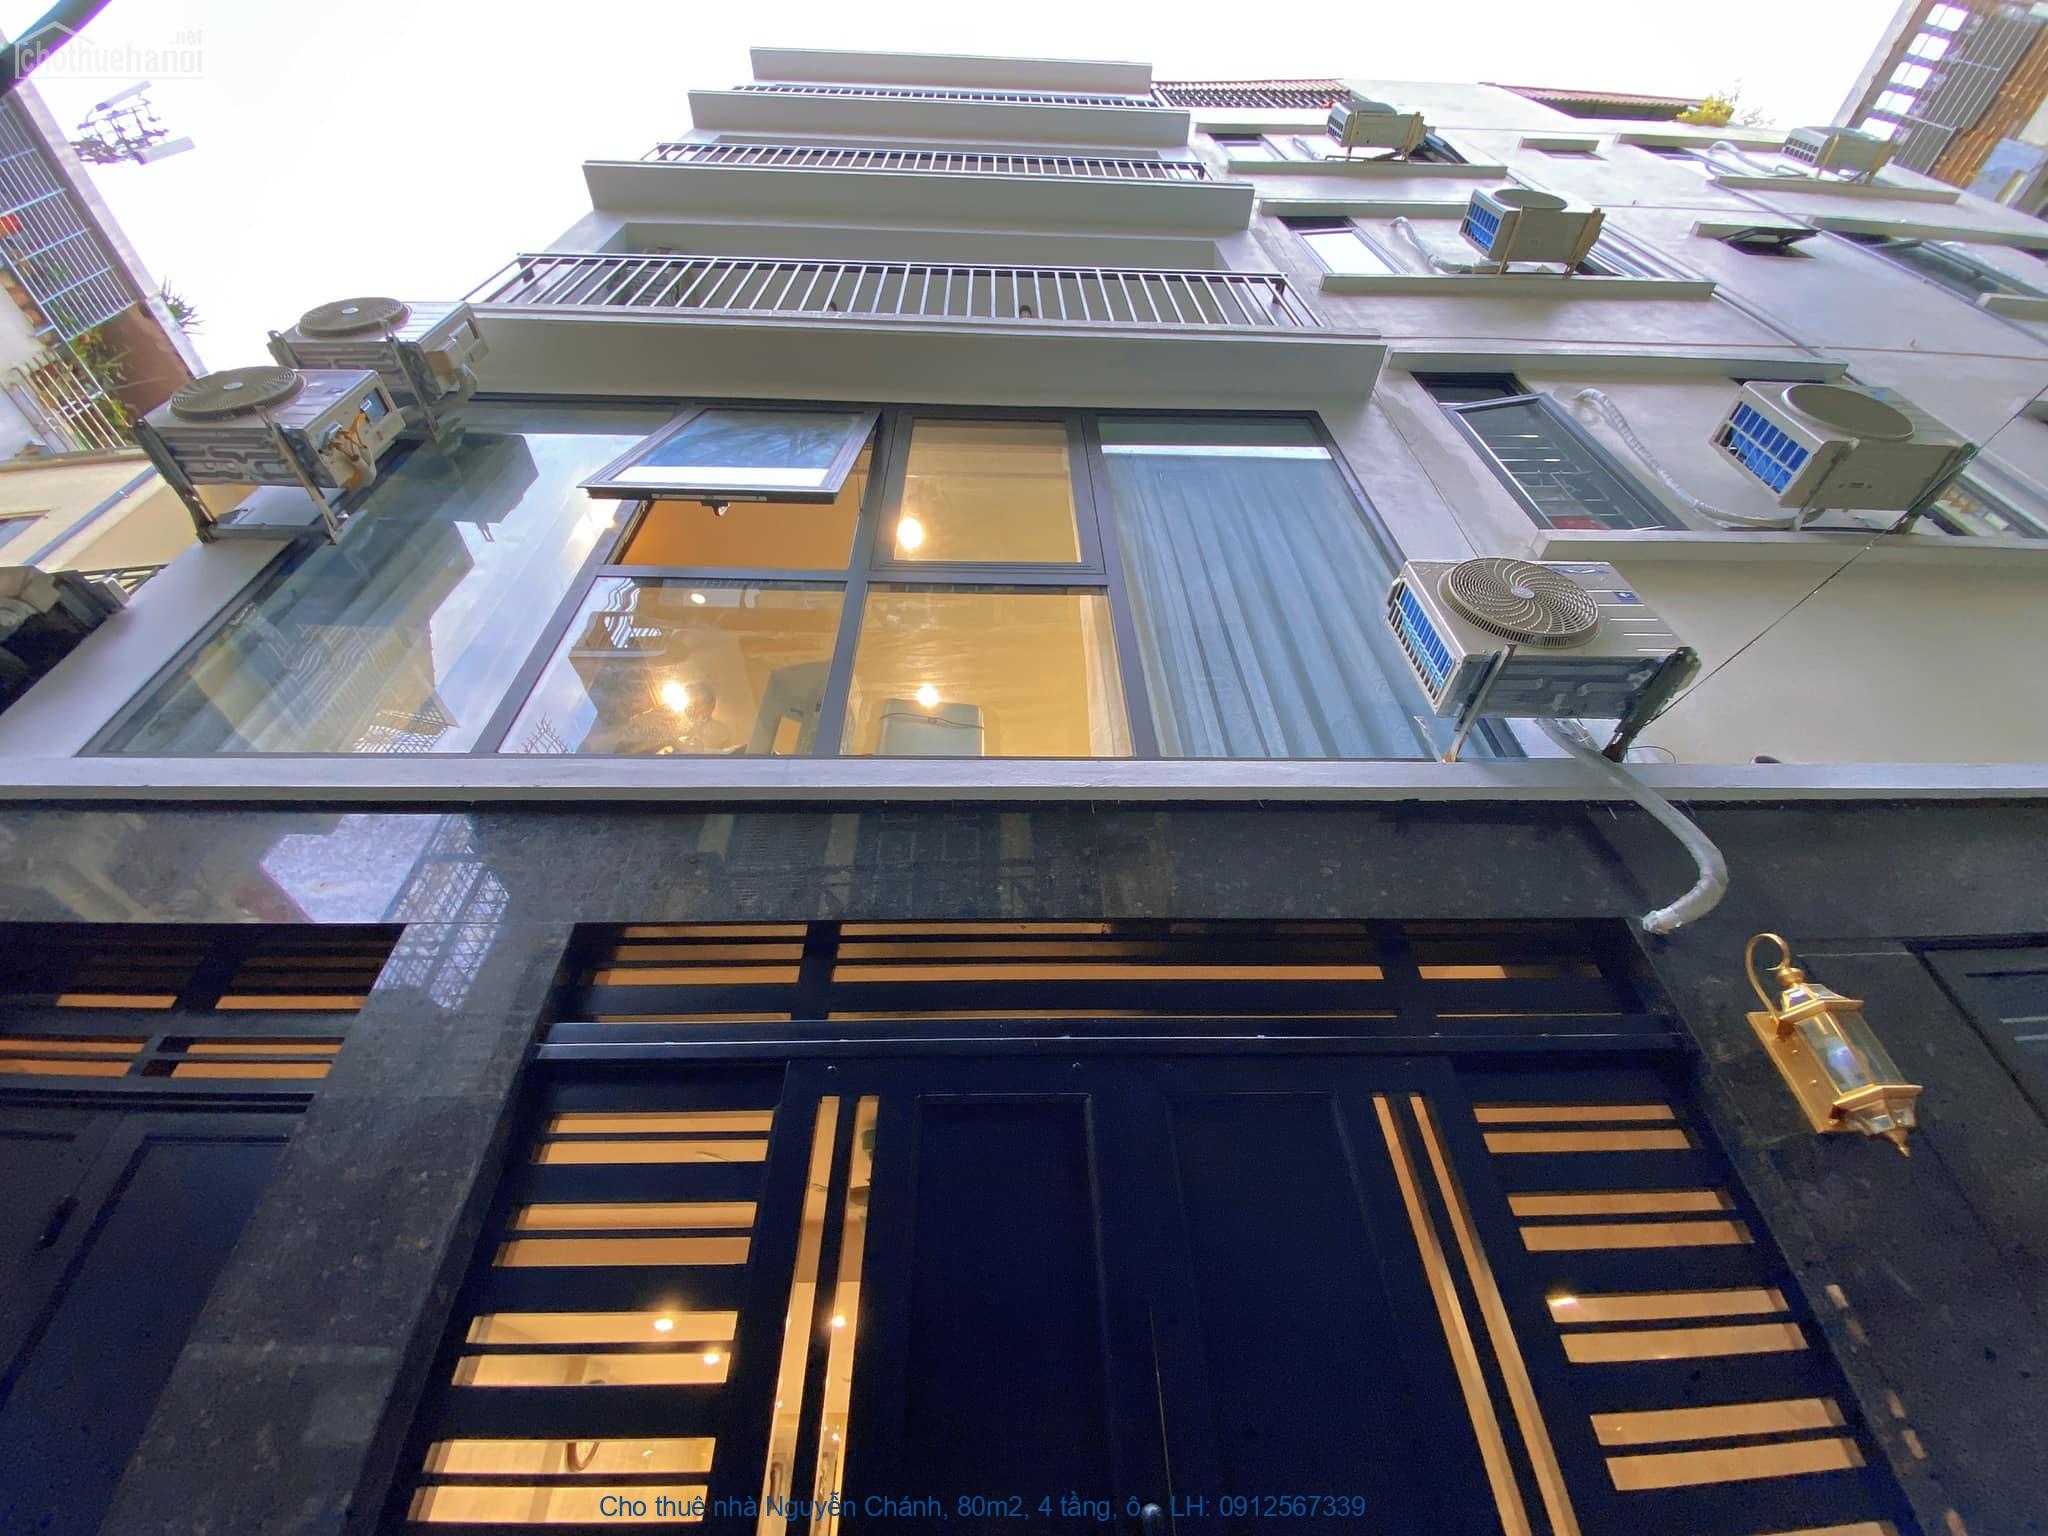 Cho thuê nhà Nguyễn Chánh, 80m2, 4 tầng, ô tô đỗ cửa làm văn phòng,